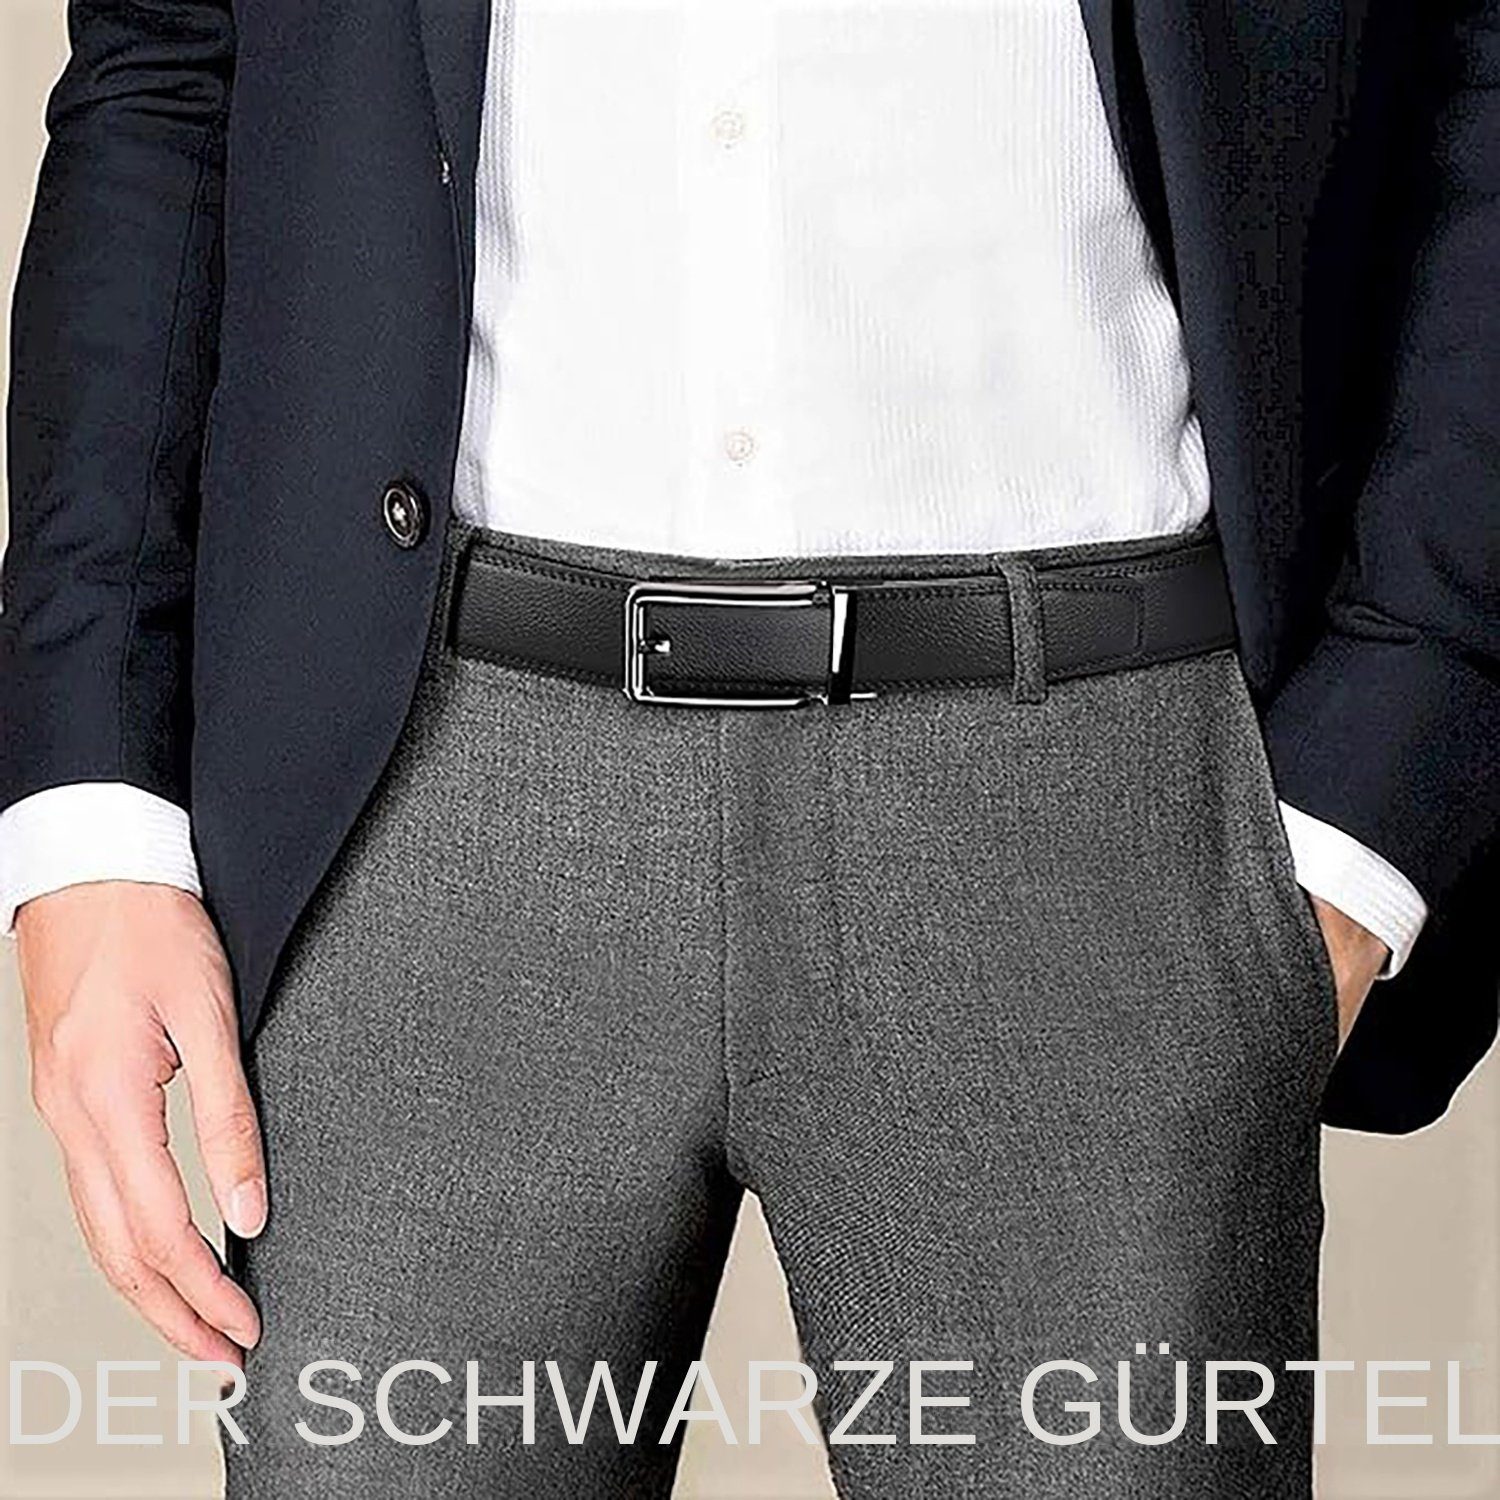 götäzer Gürtelriemen Herrengürtel aus Rindsleder Hüftgurt 35 mm breiter für Herren(120cm) Stylischer Gürtel – Perfekte Ergänzung für Ihren Look!